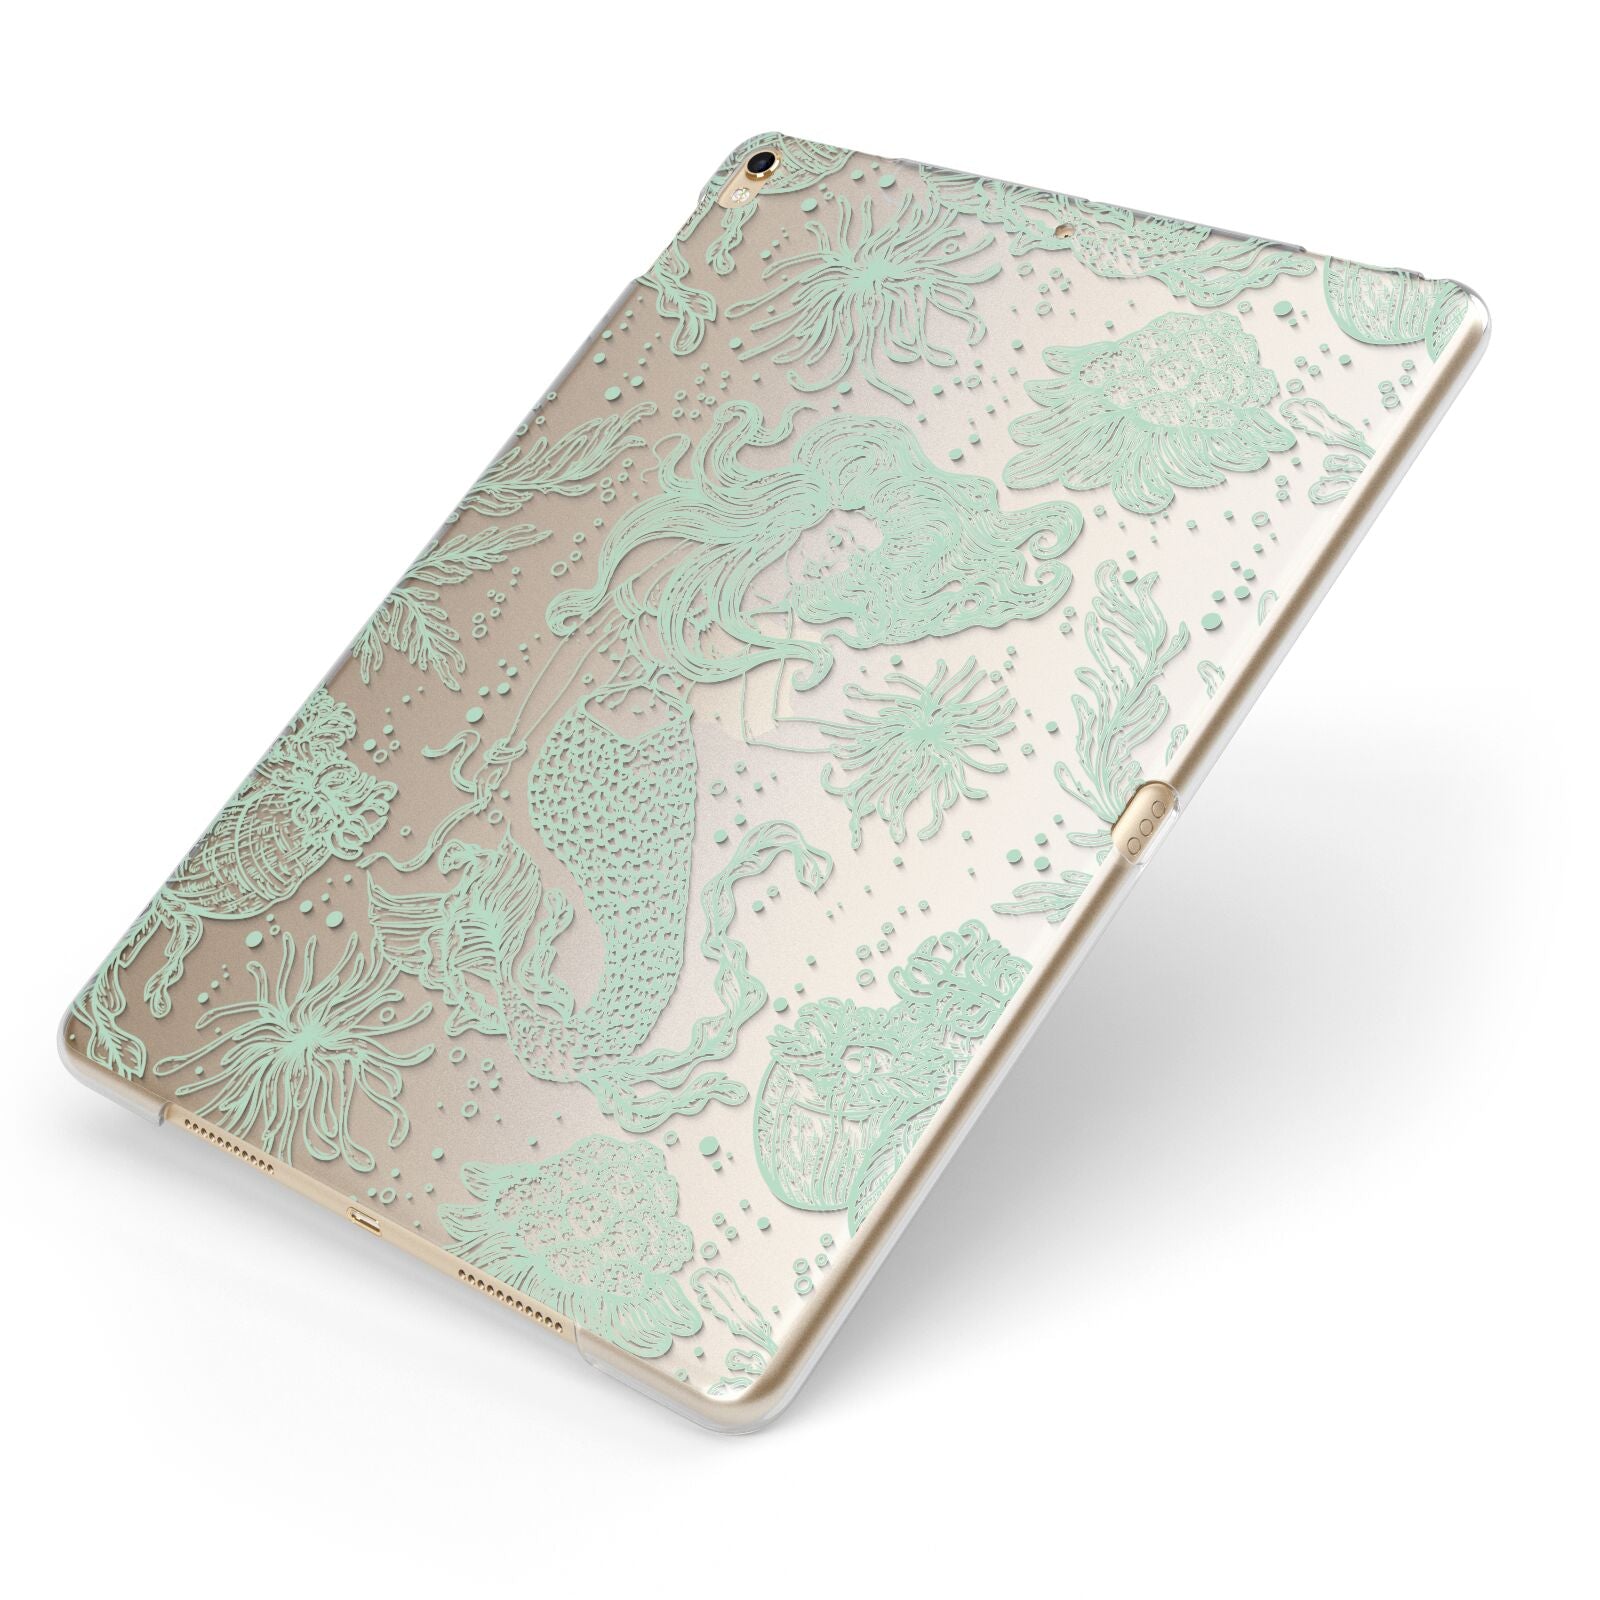 Sea Mermaid Apple iPad Case on Gold iPad Side View